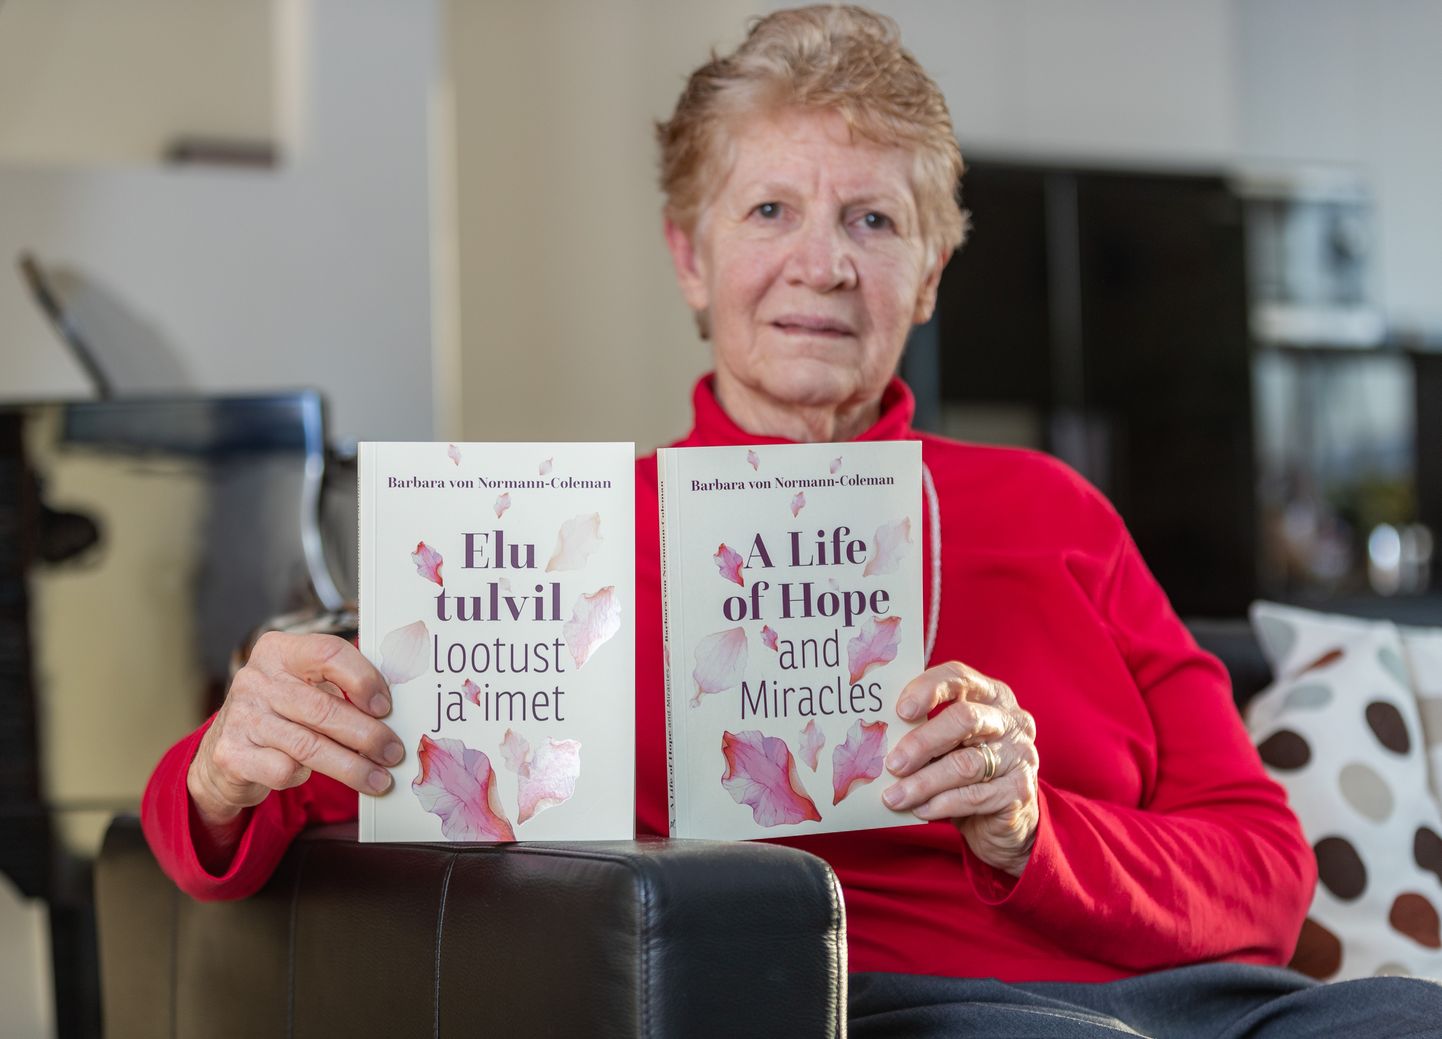 Raamatu "Elu tulvil lootust ja imet" autor Barbara von Normann-Coleman.